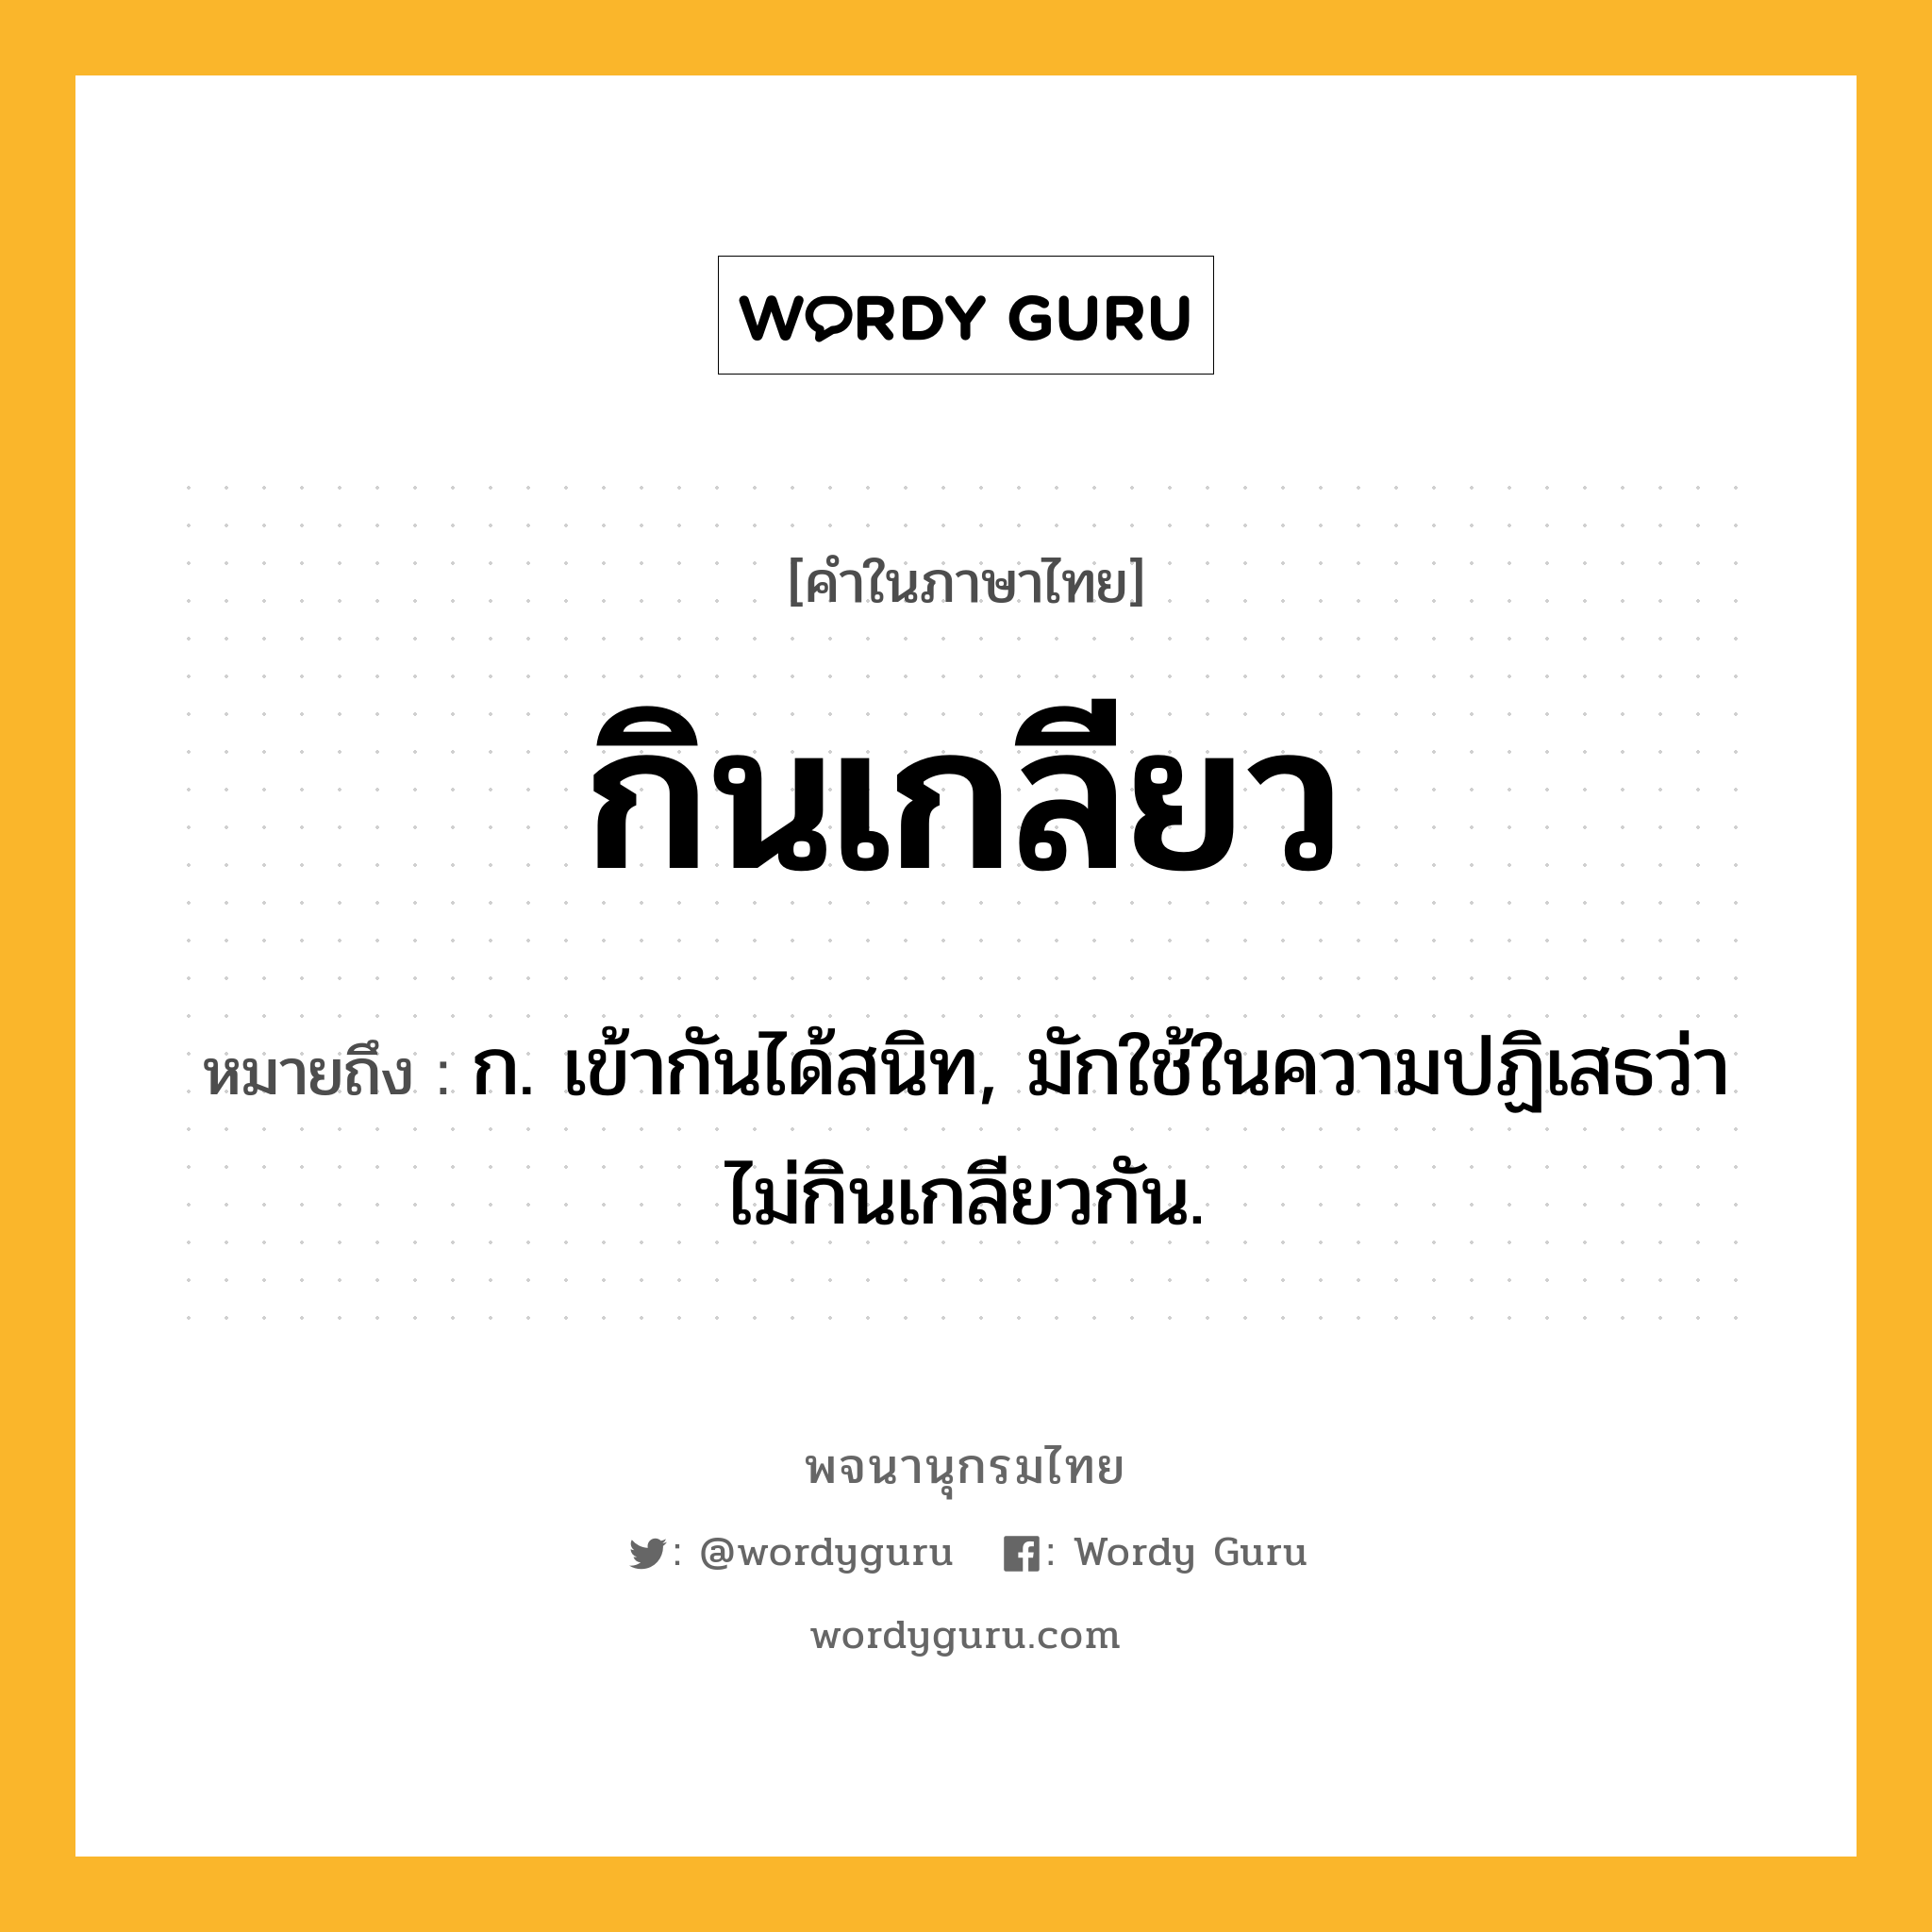 กินเกลียว ความหมาย หมายถึงอะไร?, คำในภาษาไทย กินเกลียว หมายถึง ก. เข้ากันได้สนิท, มักใช้ในความปฏิเสธว่า ไม่กินเกลียวกัน.